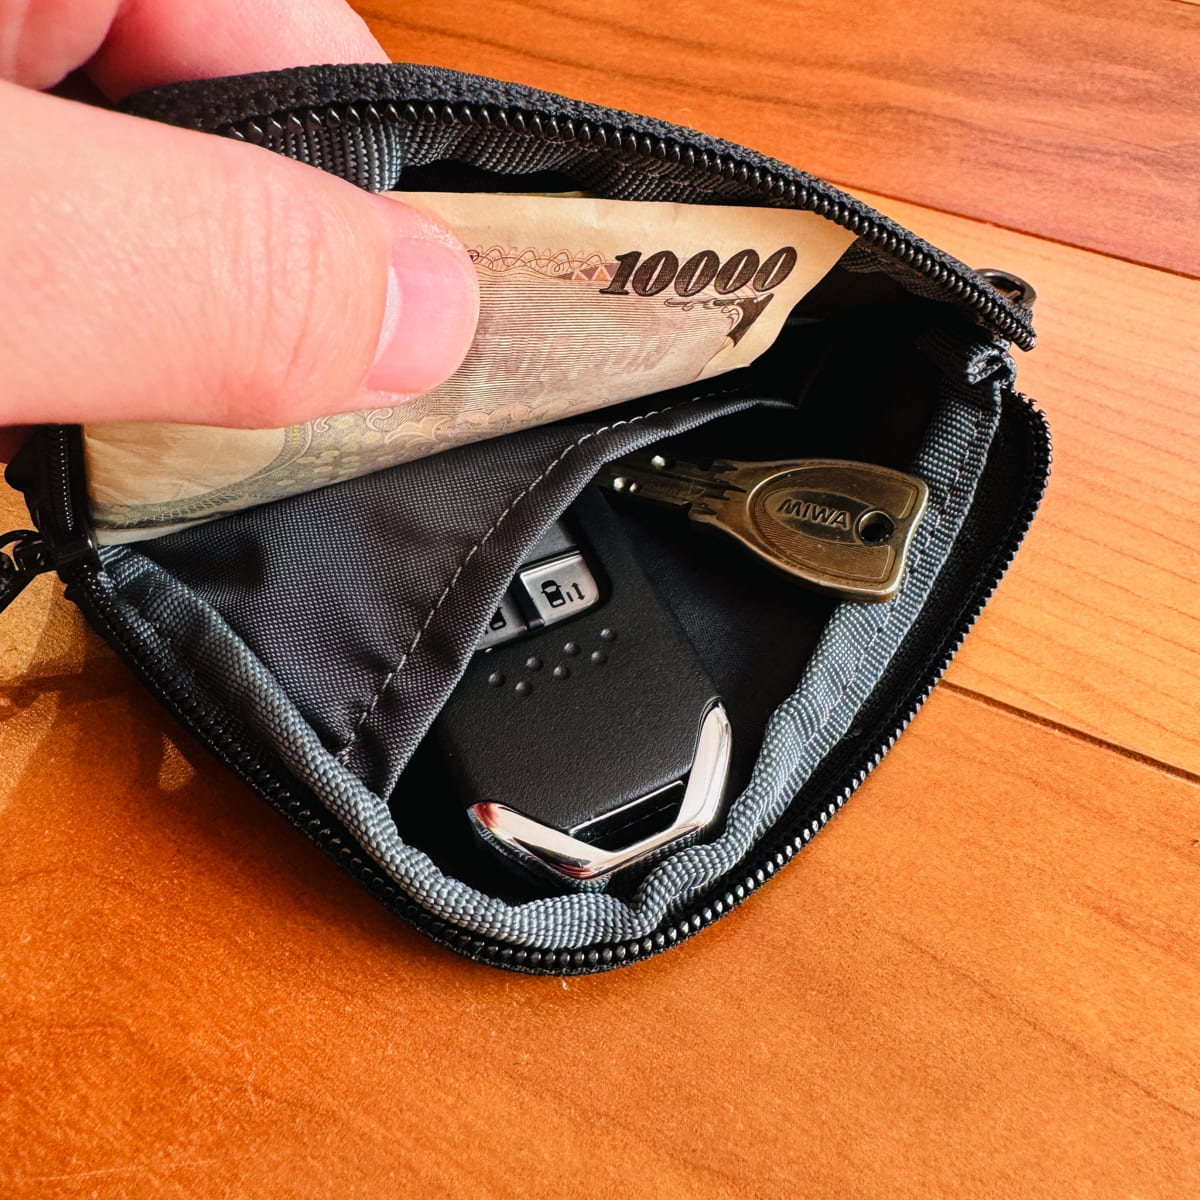 ミレー ライトウォレット レビュー。軽くて極薄。2,000円で手に入る手軽さと使い勝手も兼ね備えたミニマルな財布。